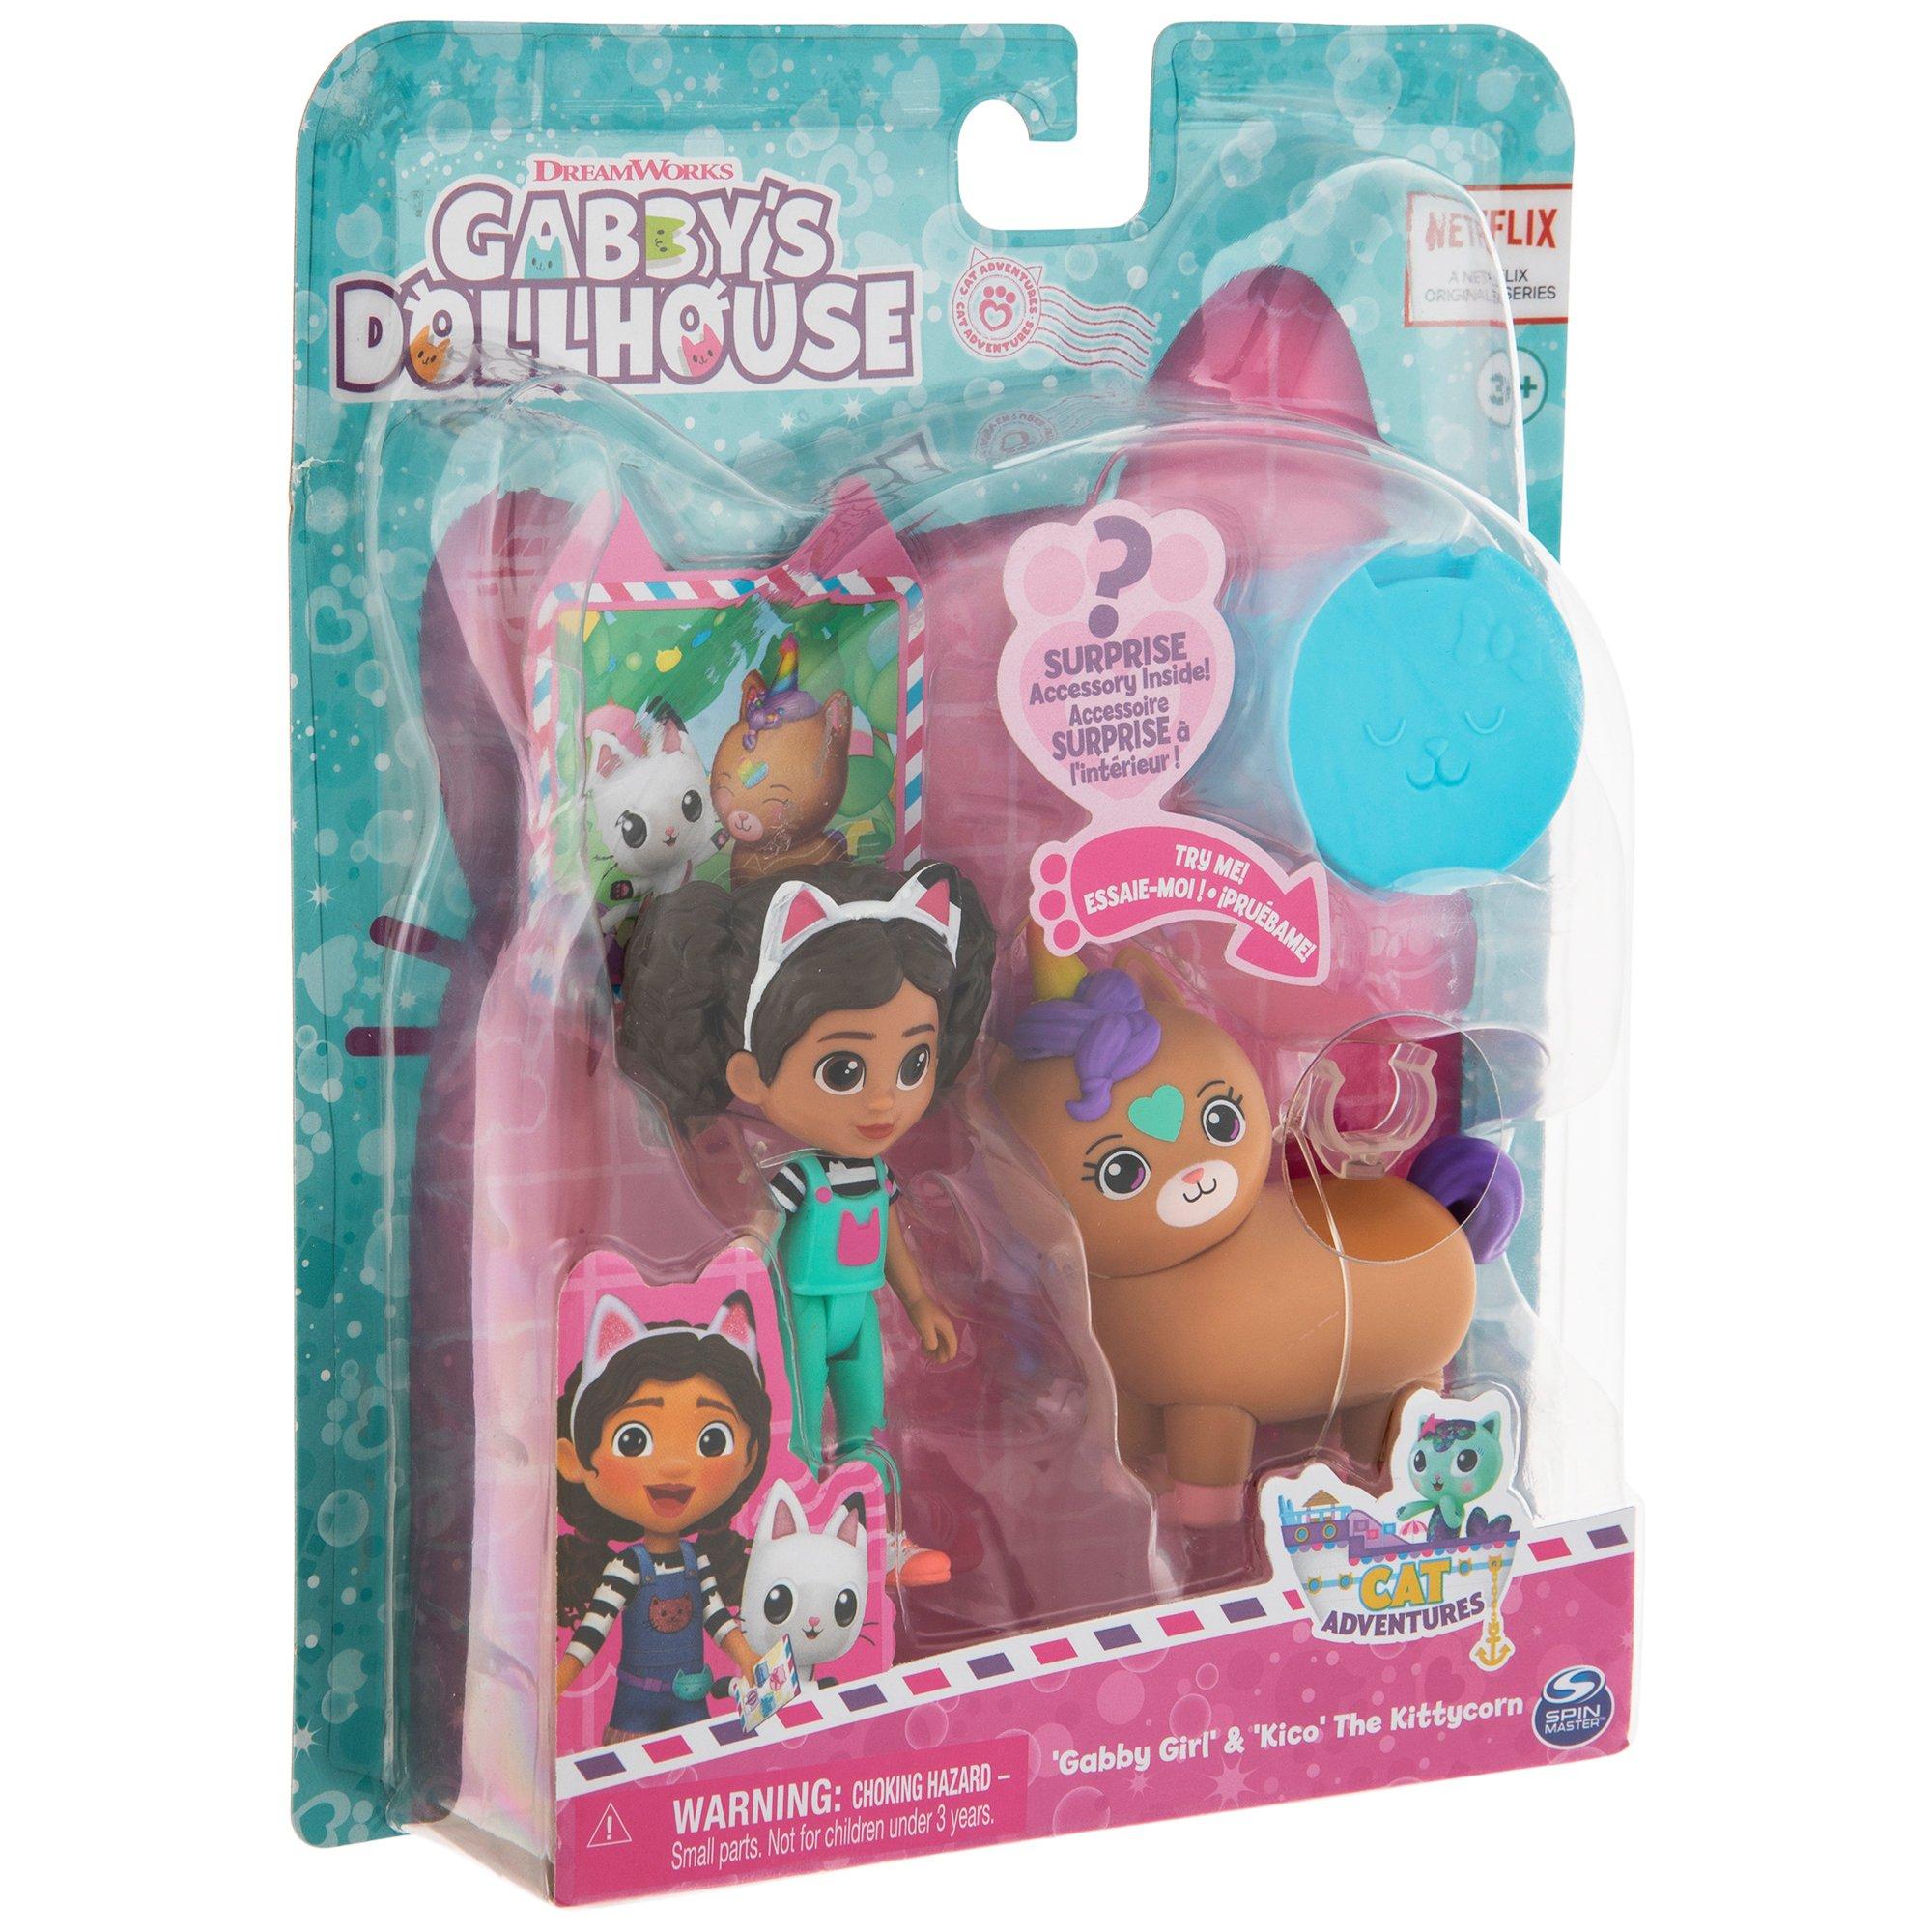 Gabby's Dollhouse Figurines, Hobby Lobby